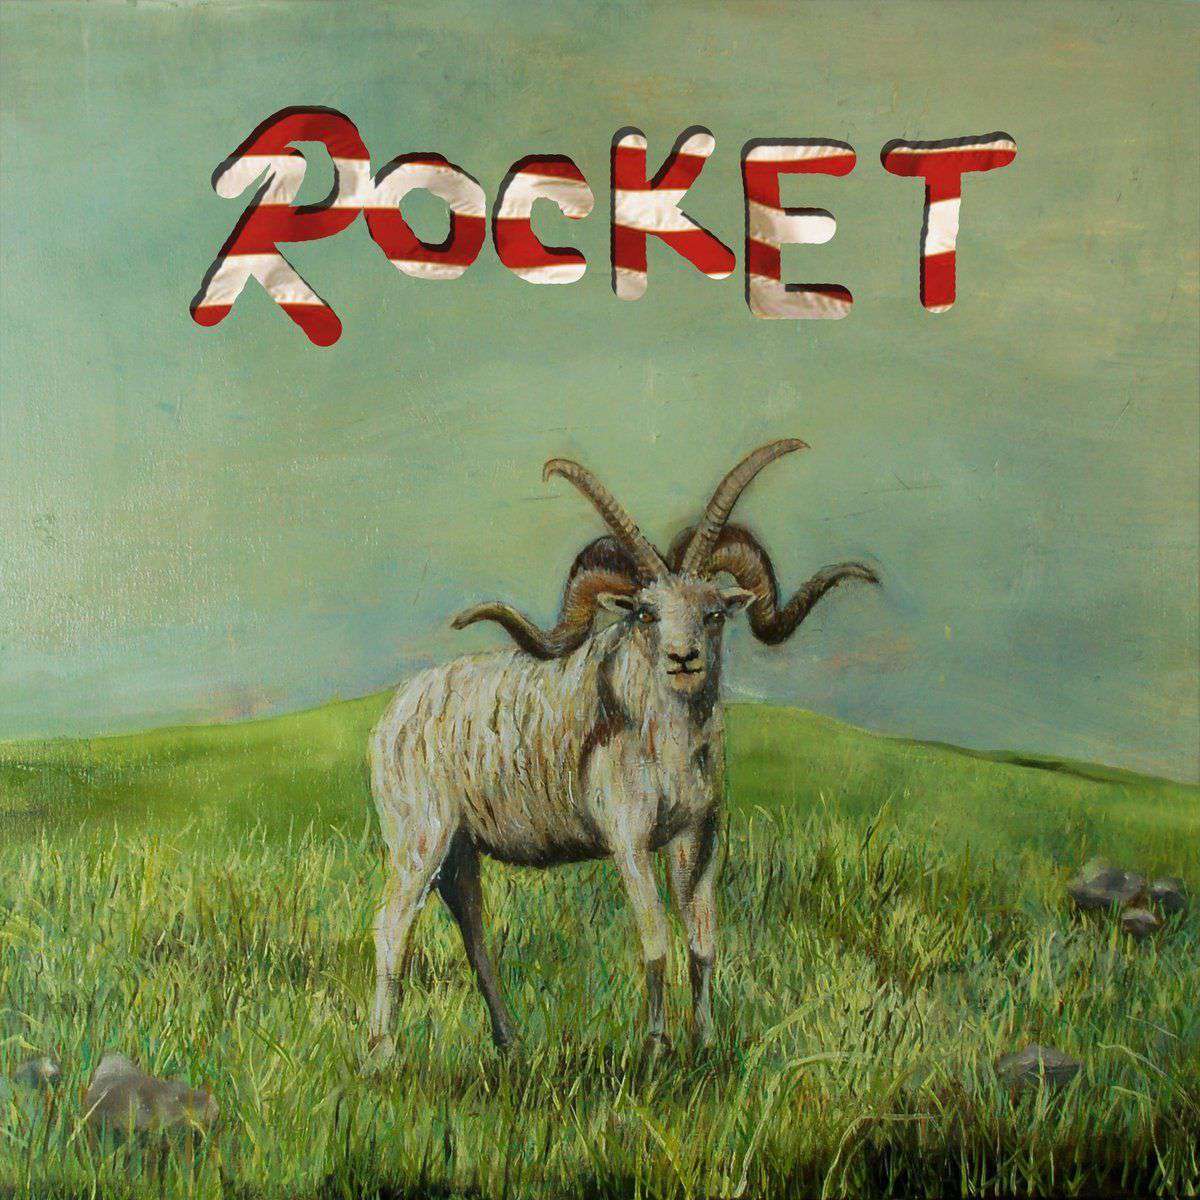 Alex G – Rocket | Buy on Vinyl LP